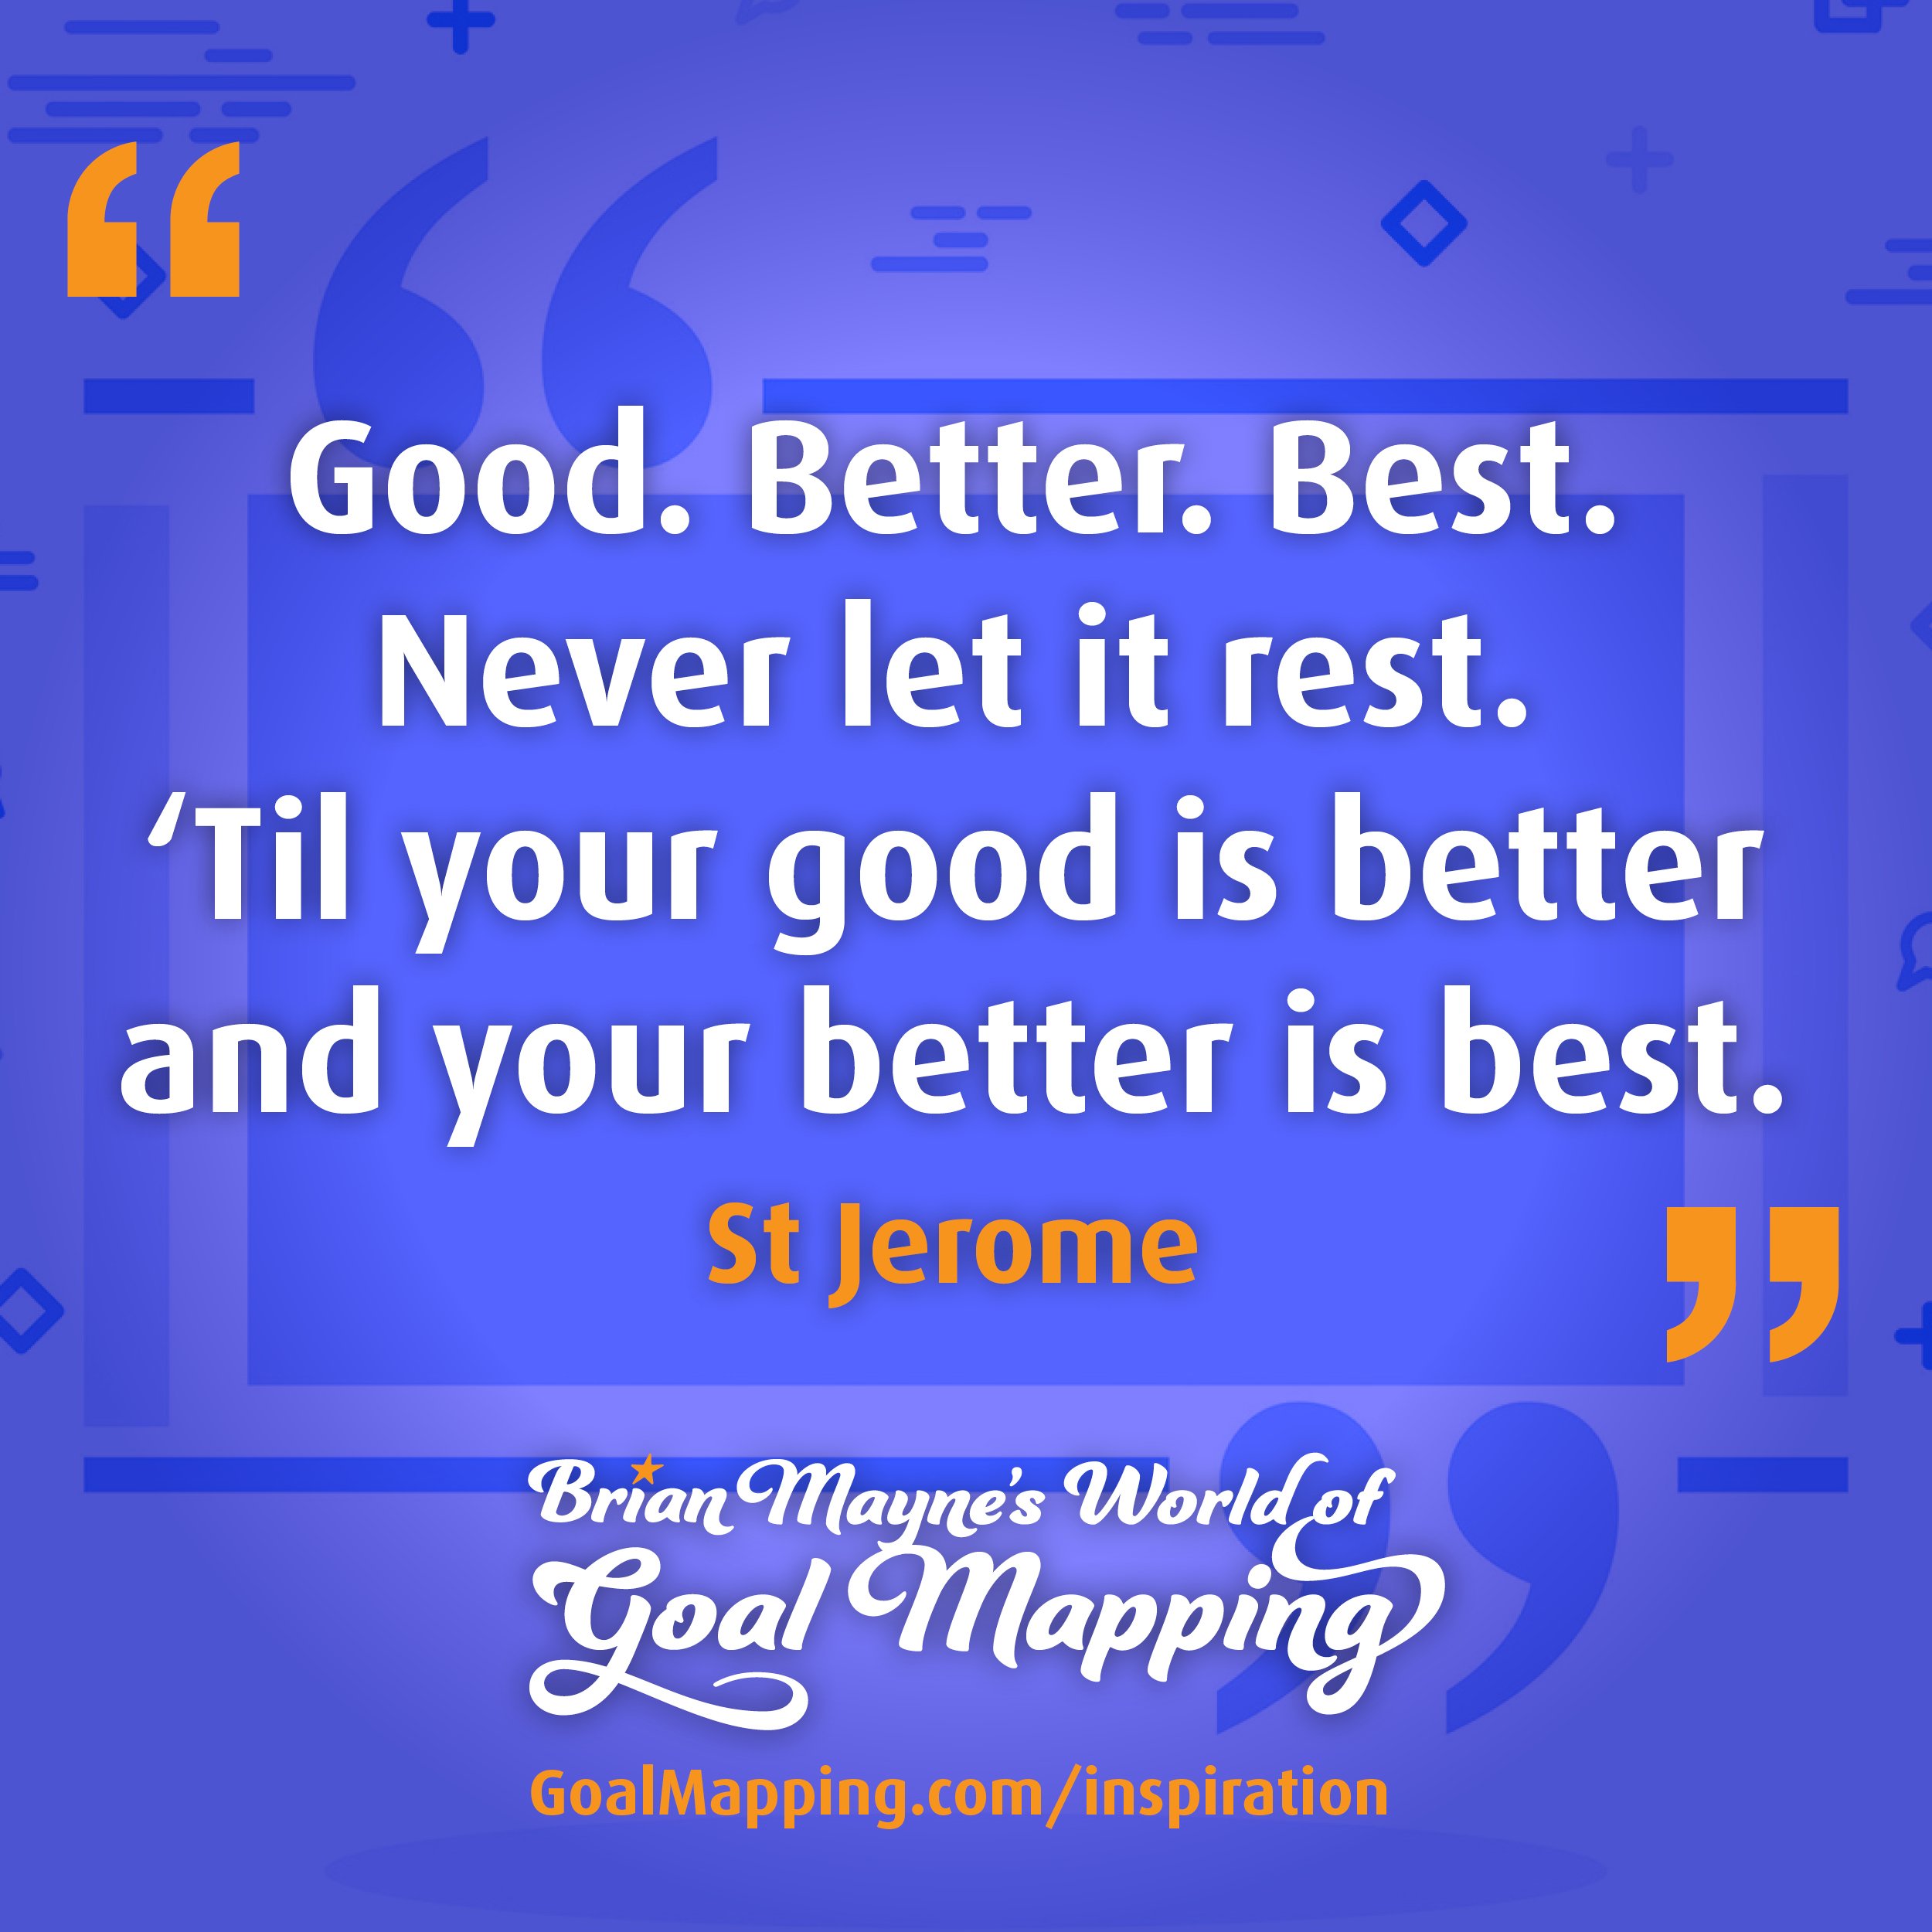 "Good. Better. Best. Never let it rest. ‘Til your good is better and your better is best." St. Jerome.